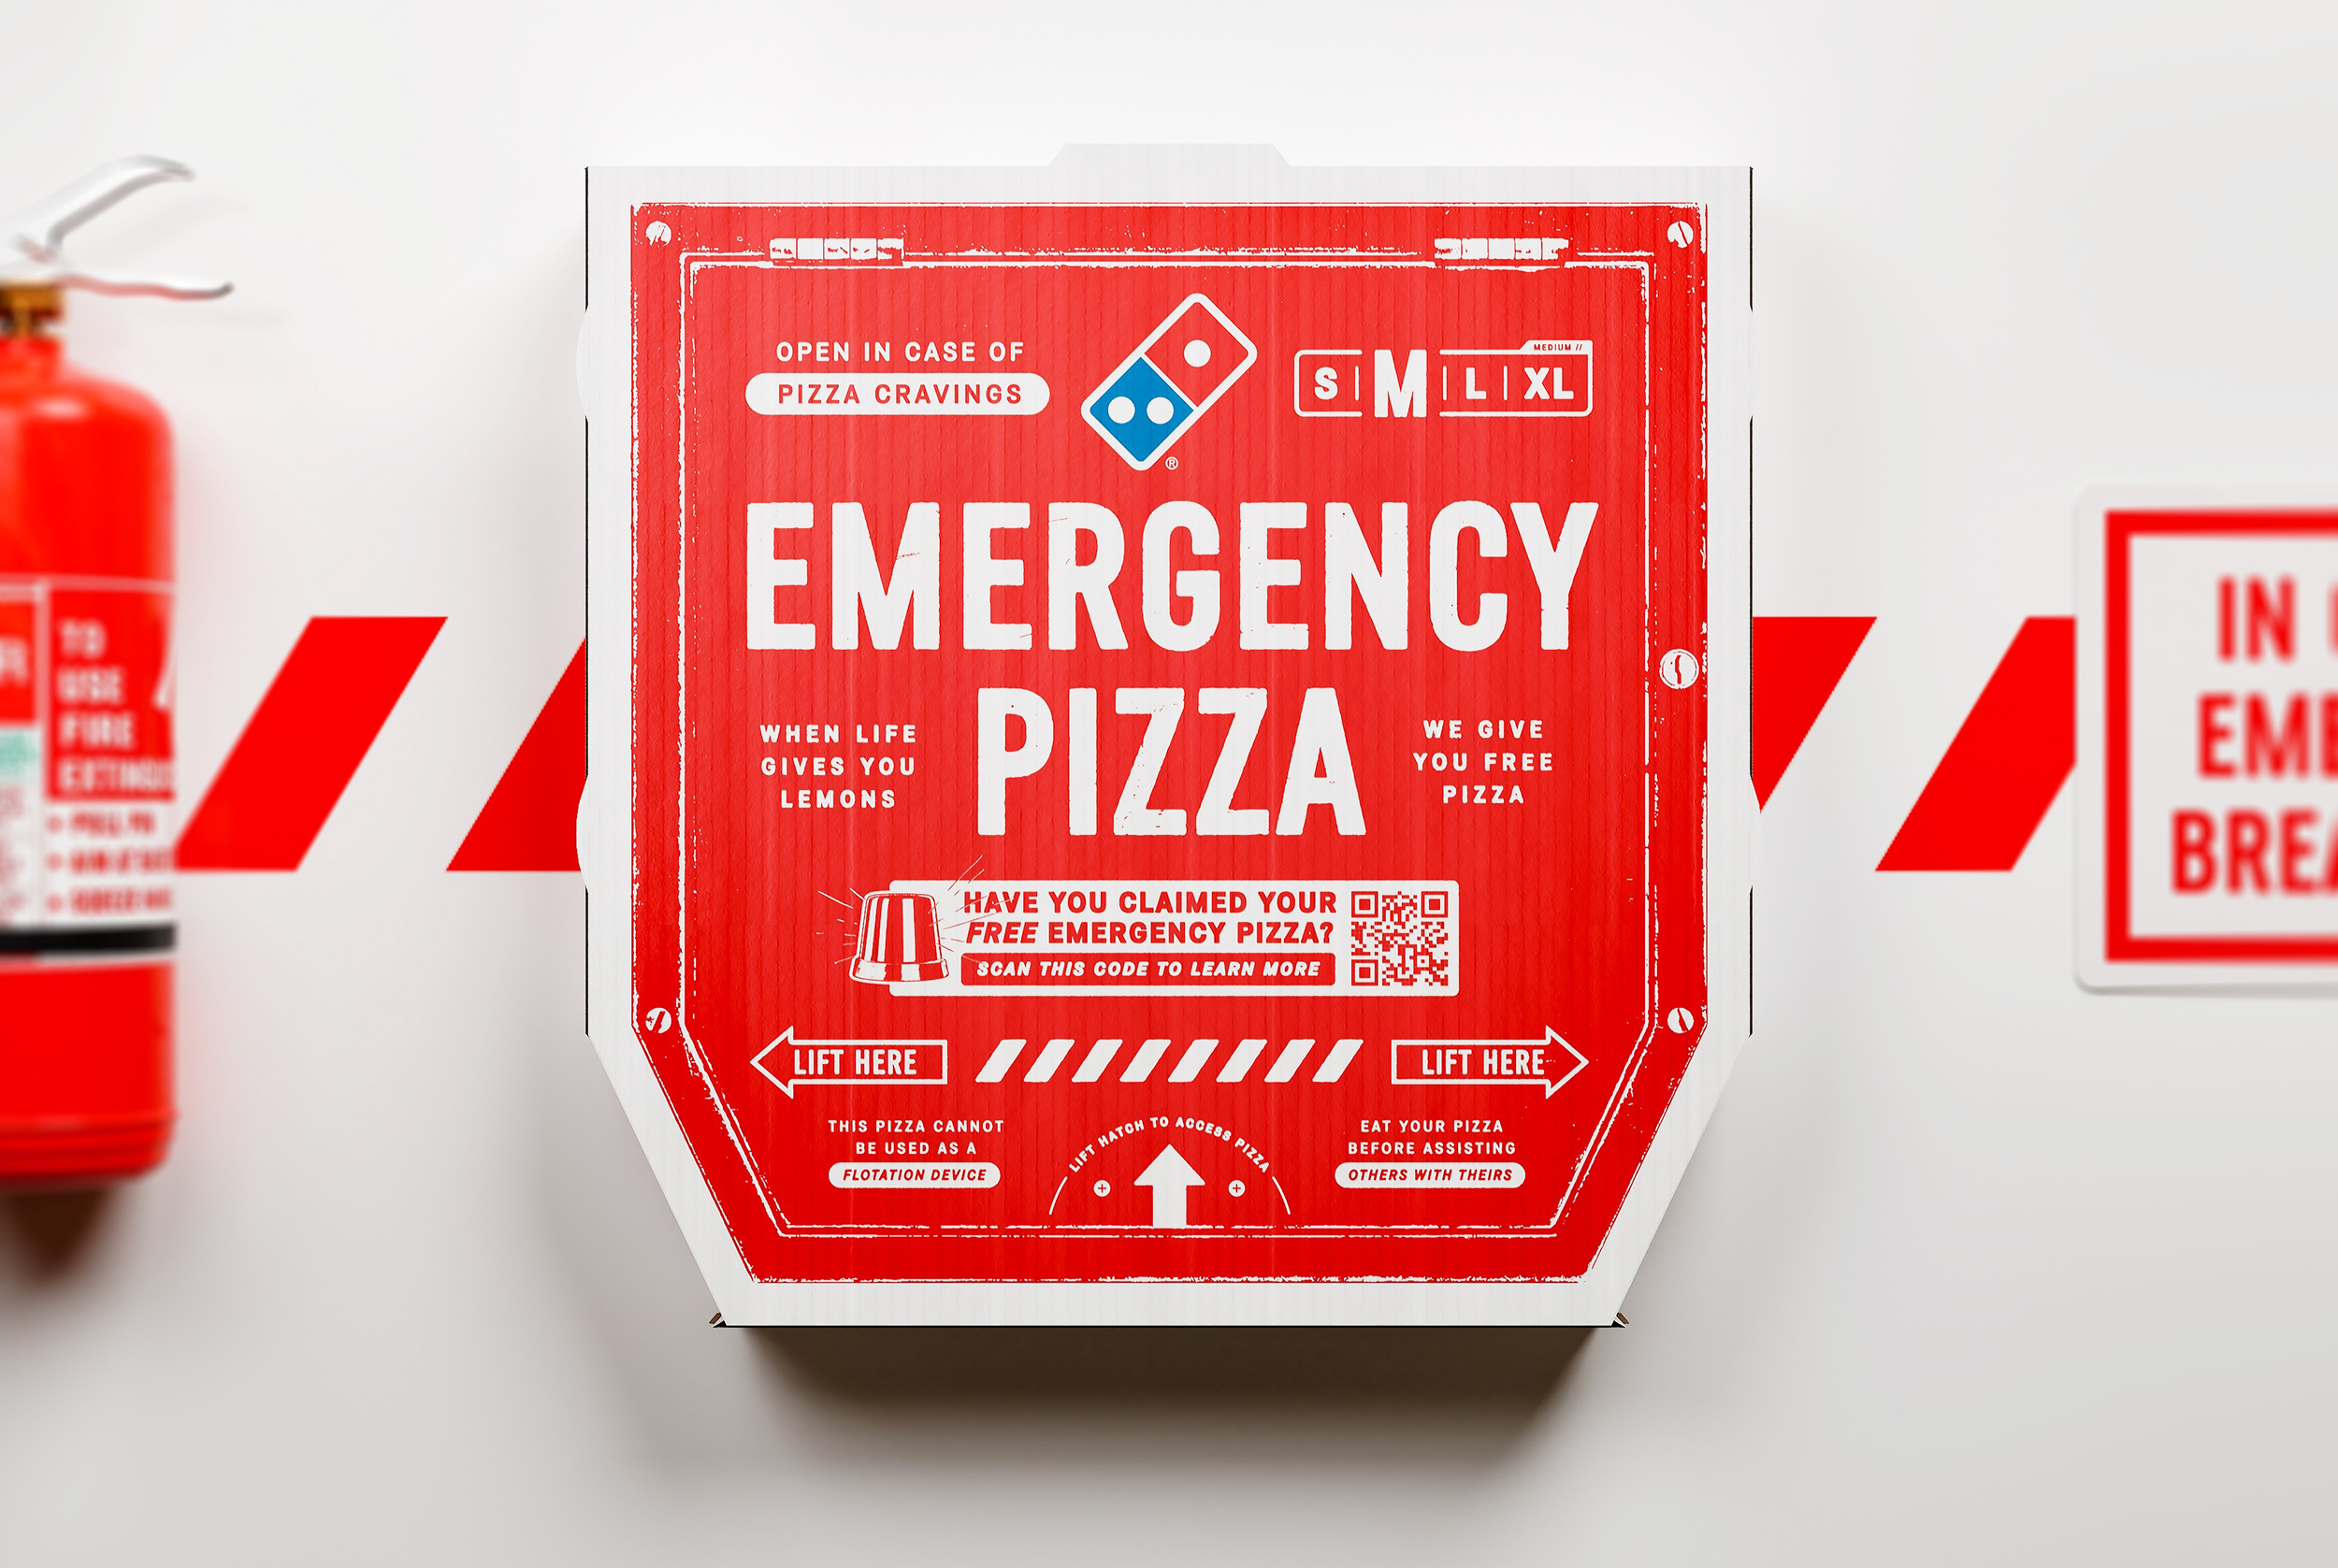 Ang 'Emergency Pizza' ng Domino ay Inilunsad para sa Mga Hindi Inaasahang Sandali!